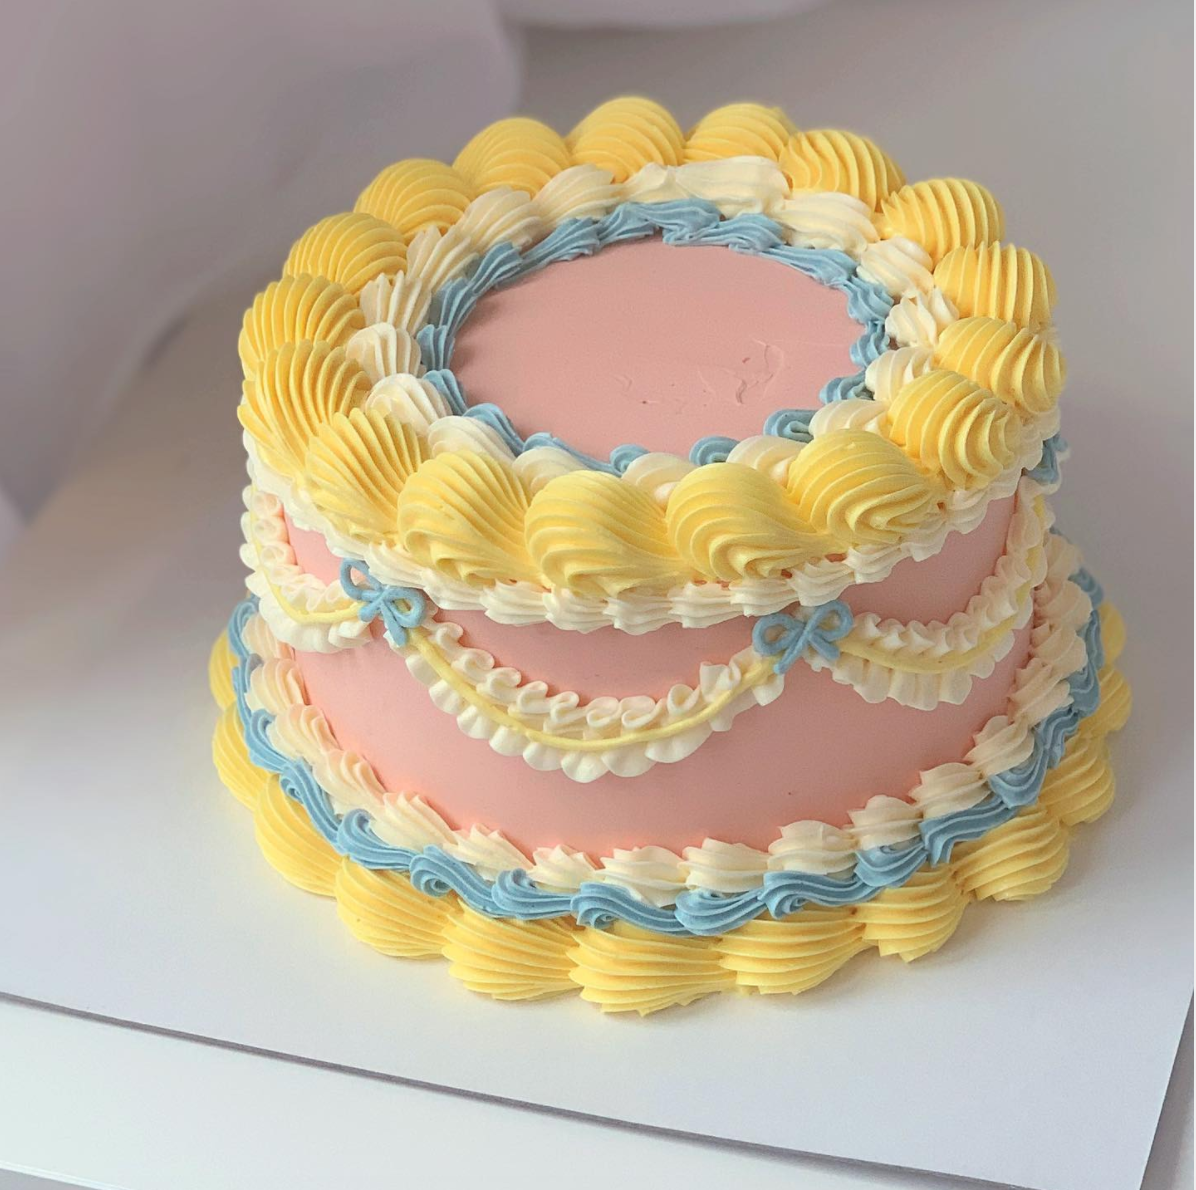 7 Lovely Cake Trends for 2019 – My Wedding Favors Blog